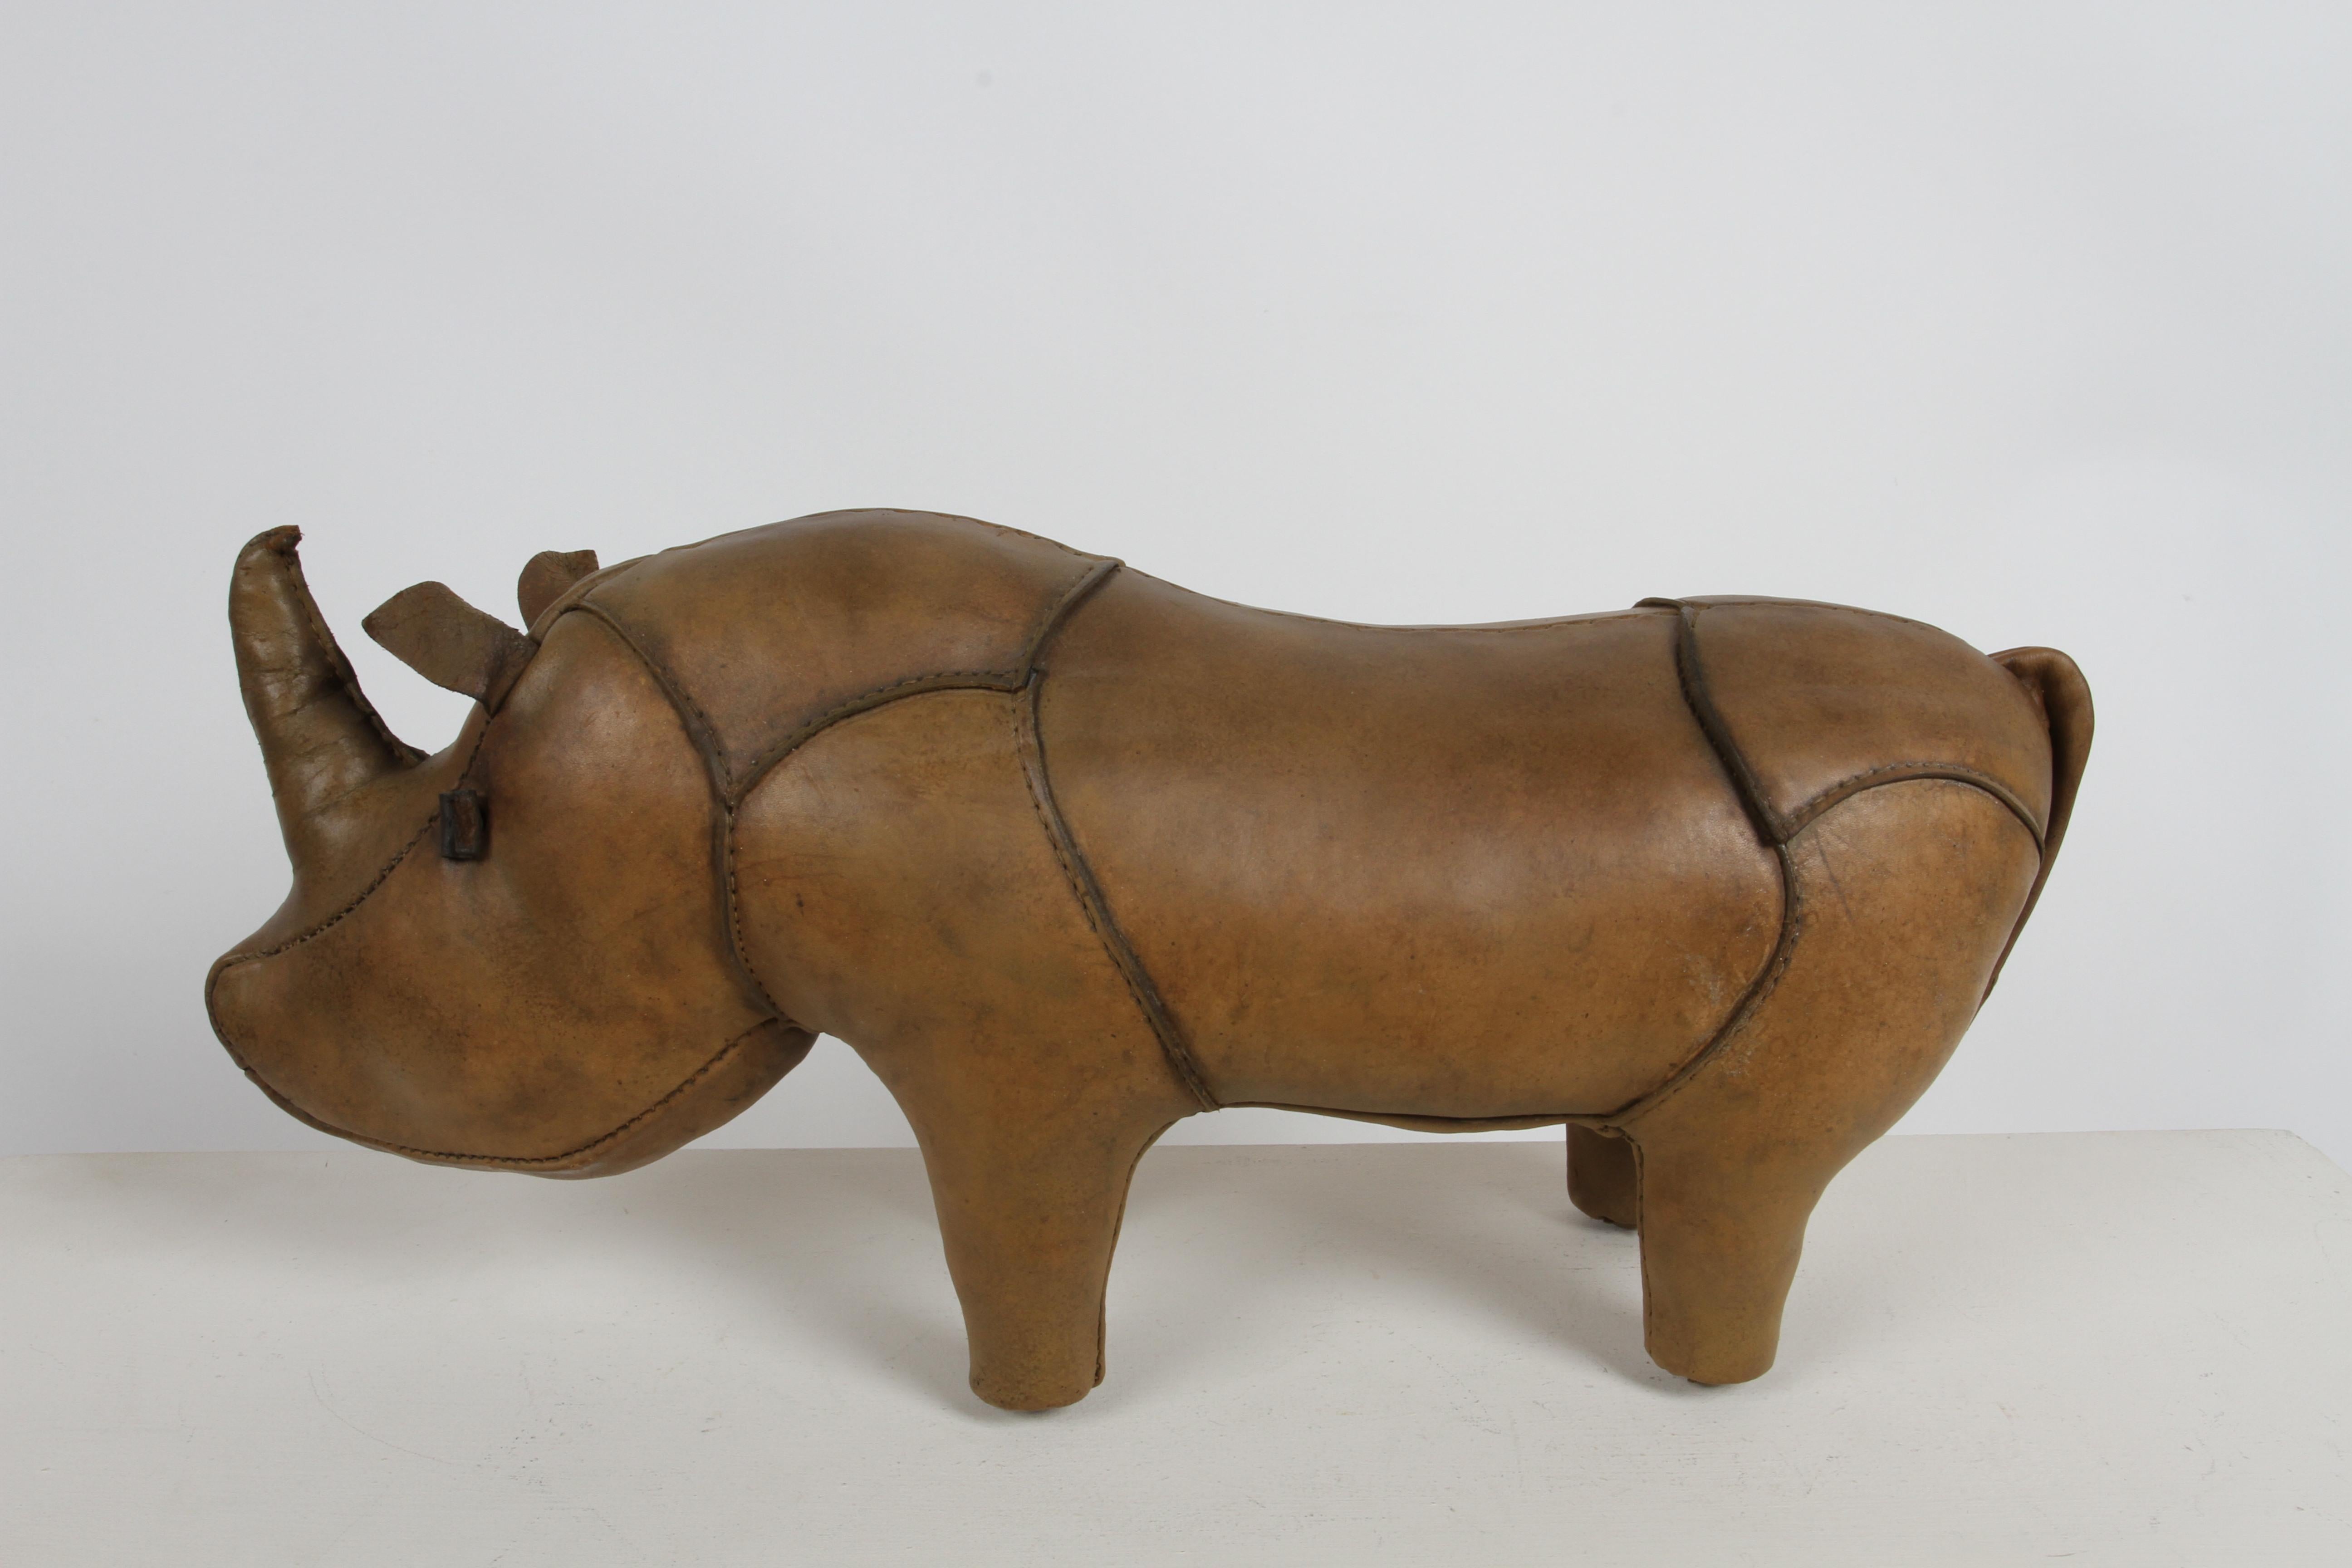 Ottoman / sculpture en cuir en forme de Rhinocéros, datant du début des années 1960, fabriqué par Omersa et vendu au détail par Abercrombie & Fitch. Ce rhinocéros a été remis à neuf, y compris la nouvelle queue de remplacement d'usine d'Omersa, ce